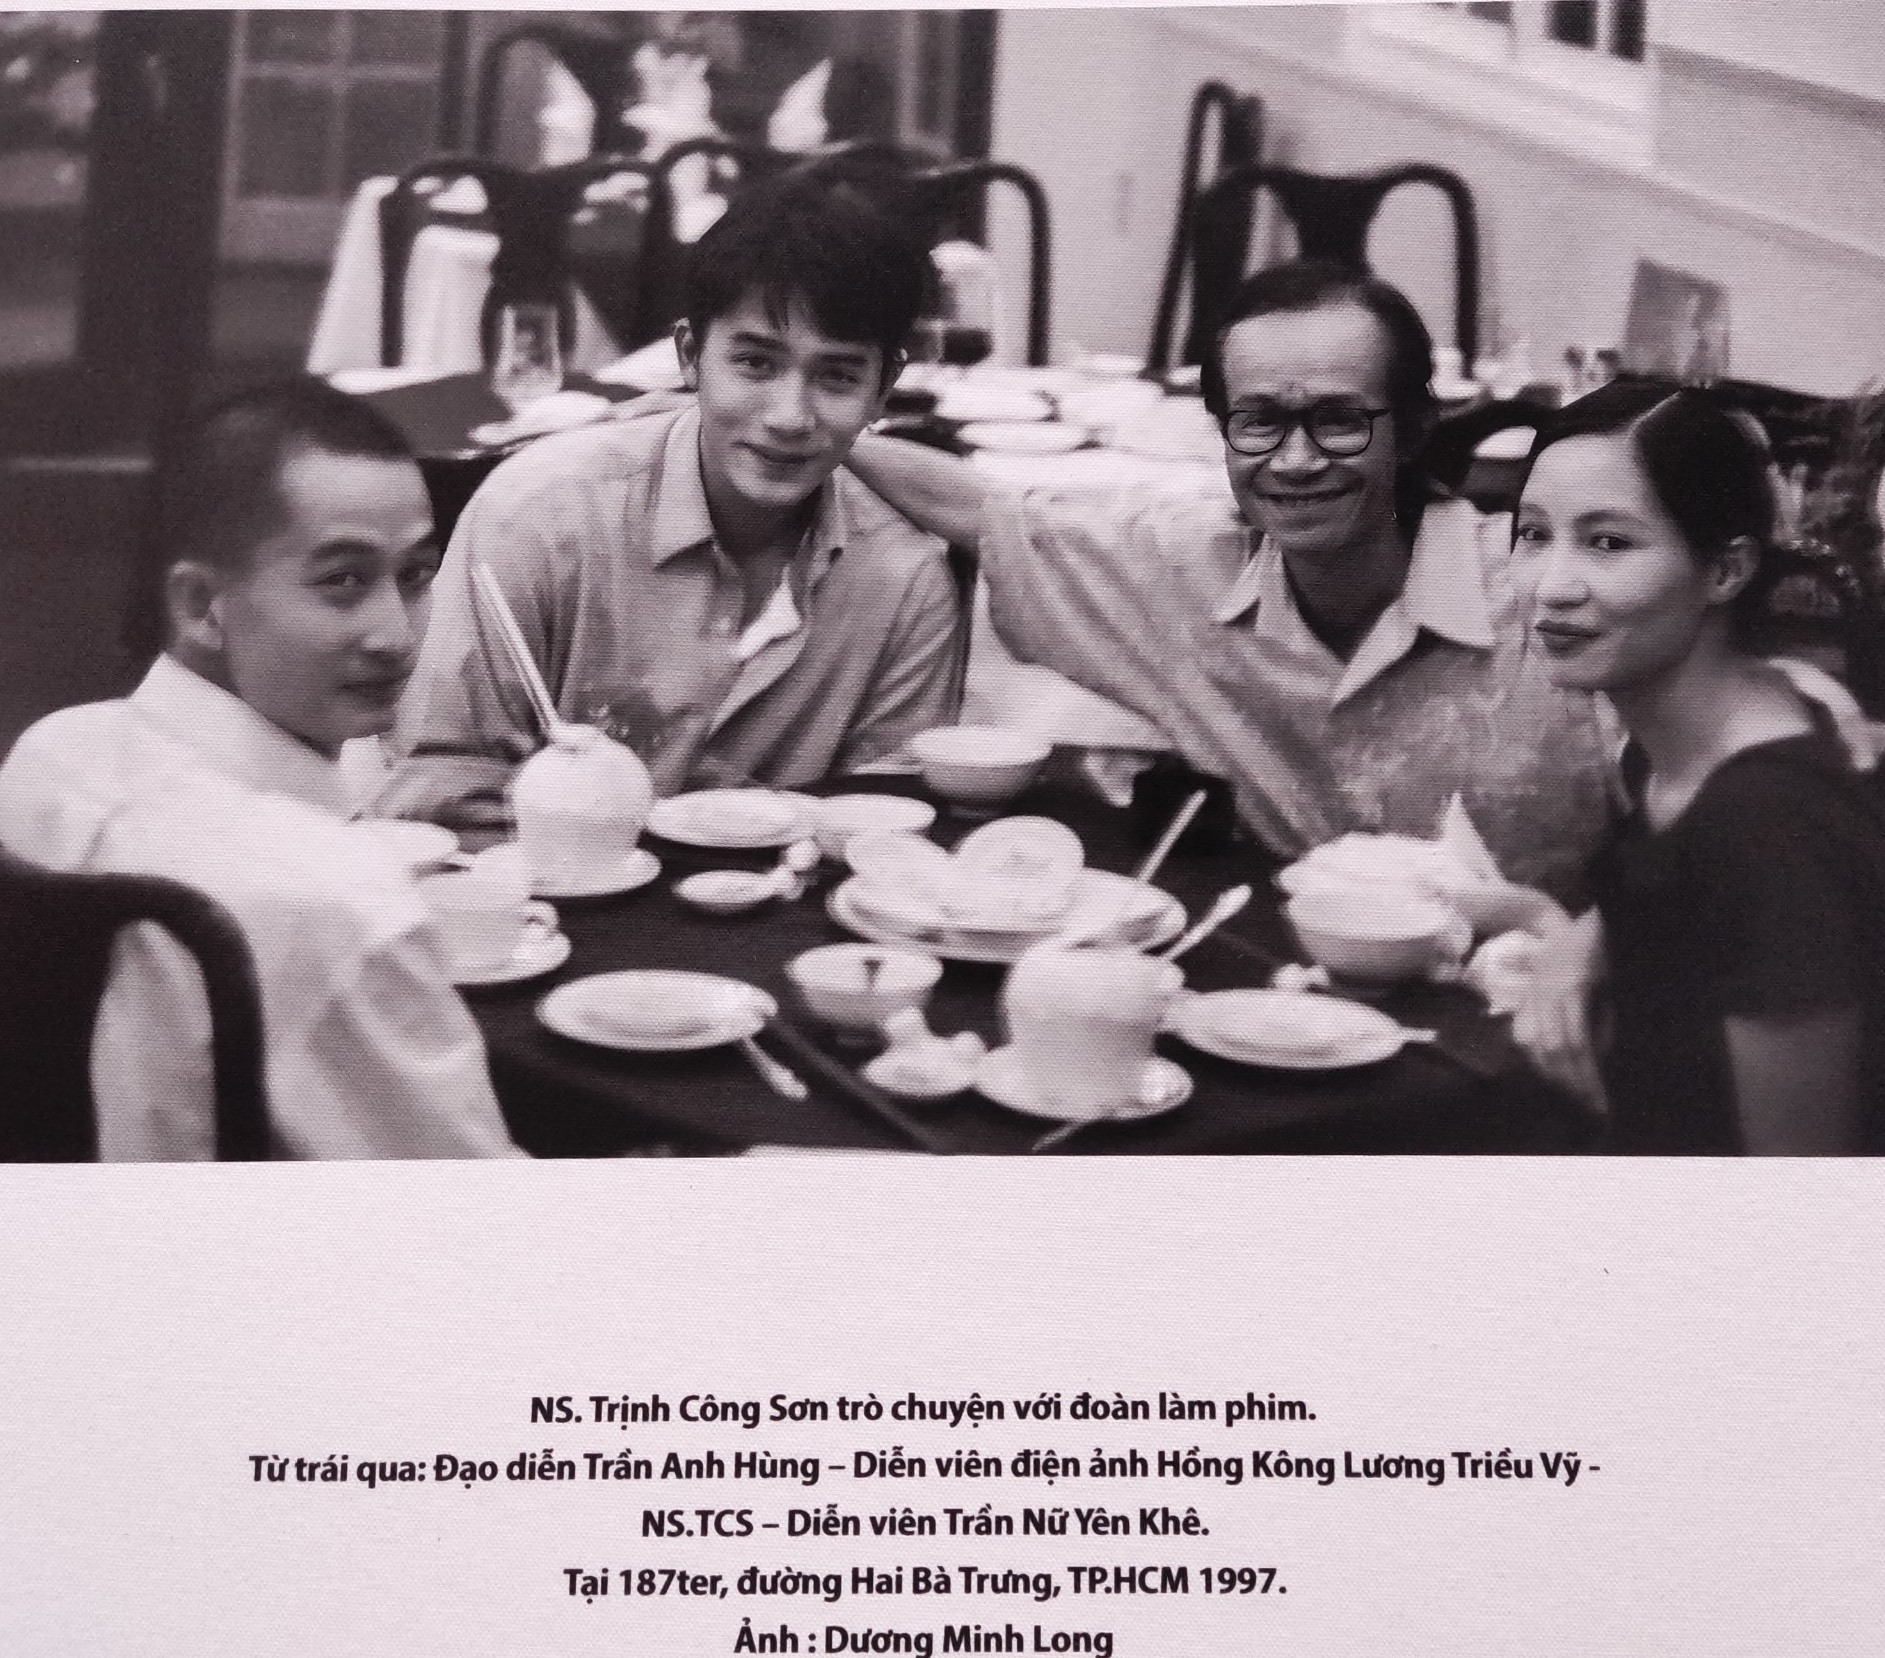 Bước ảnh có sự góp mặt của đạo diễn Trần Anh Hùng, tài tử Lương Triều Vỹ, nhạc sĩ Trịnh Công Sơn và diễn viên Trần Nữ Yên Khê (vợ Trần Anh Hùng) hội ngộ năm 1997 tại TP HCM. Thời điểm này, tài tử Lương Triều Vỹ tham gia dự án điện ảnh “Xích lô” của Trần Anh Hùng - tác phẩm đoạt giải Sư tử vàng cho Phim hay nhất tại Liên hoan phim Venice vào năm 1995. Phim có nhiều cảnh quay tại Việt Nam.